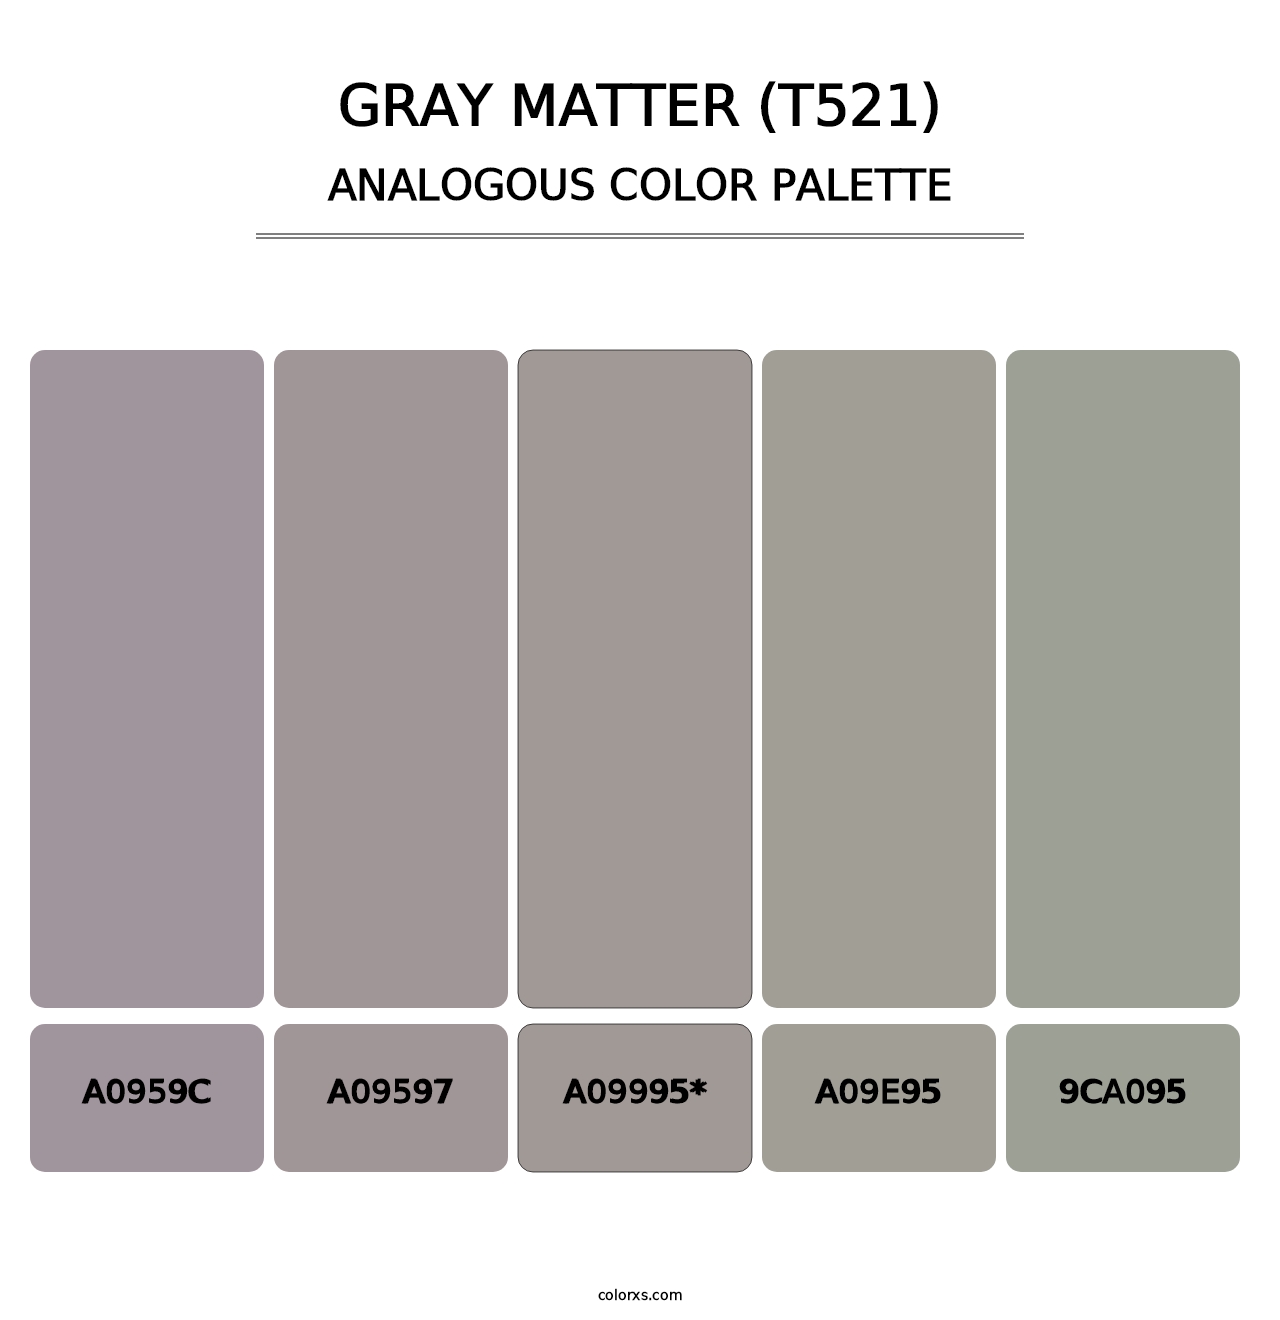 Gray Matter (T521) - Analogous Color Palette